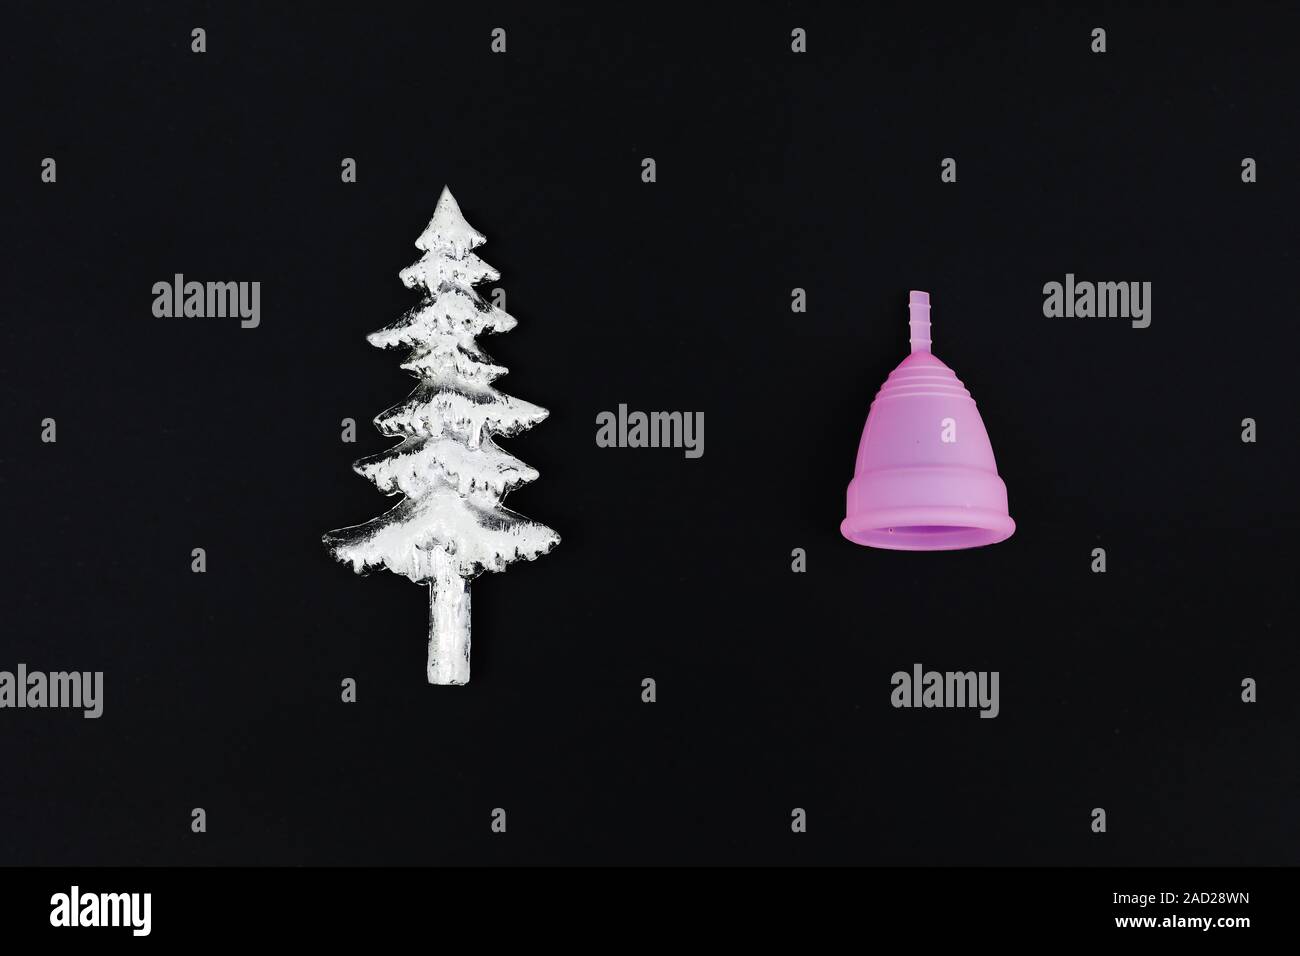 Coupe menstruelle rose sur fond noir en céramique et arbre de Noël. Produit d'hygiène féminine, télévision lay, copiez l'espace. L'horizontale. Banque D'Images